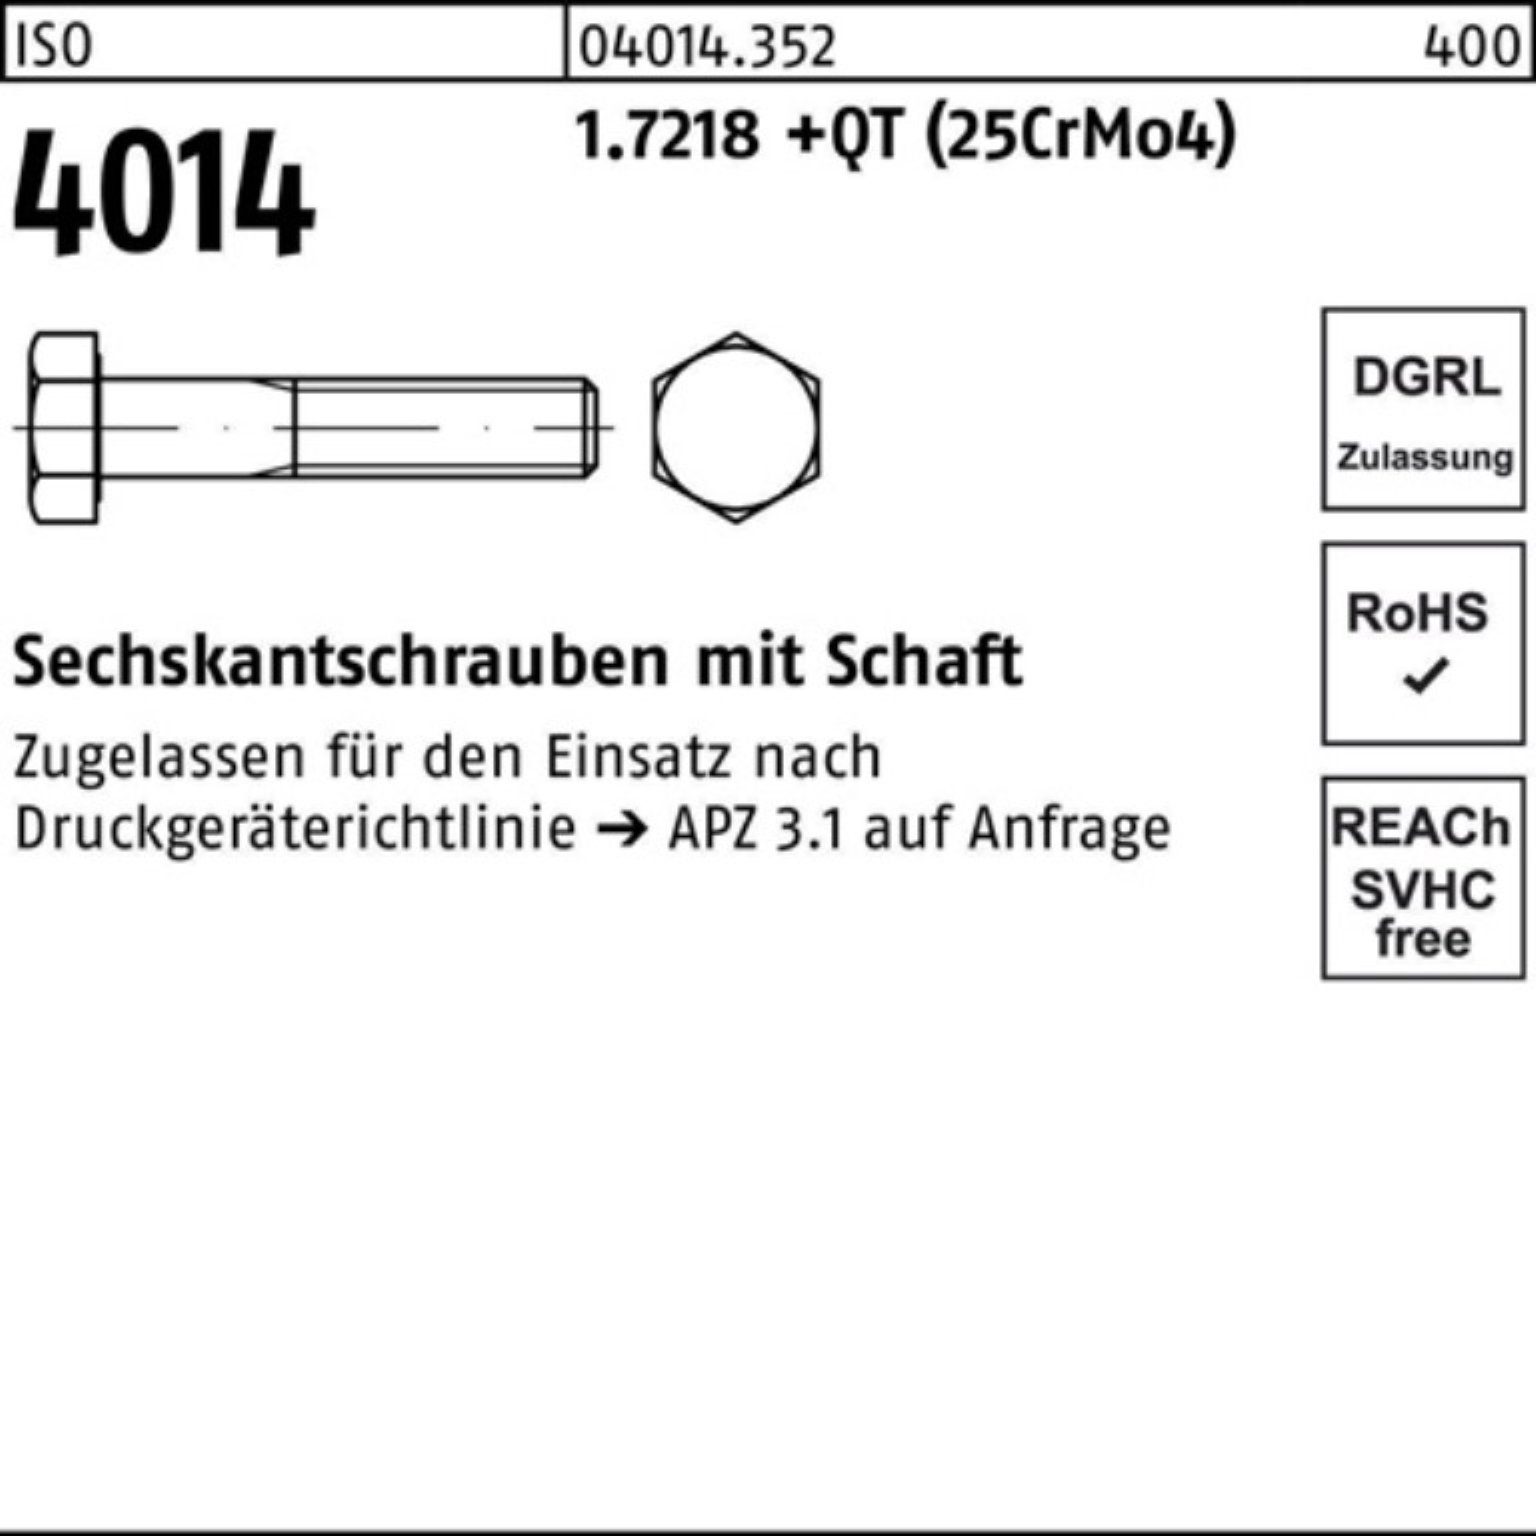 Sechskantschraube Sechskantschraube 4014 ISO 100er Pack Schaft Bufab 160 1.7218 M27x +QT (25Cr